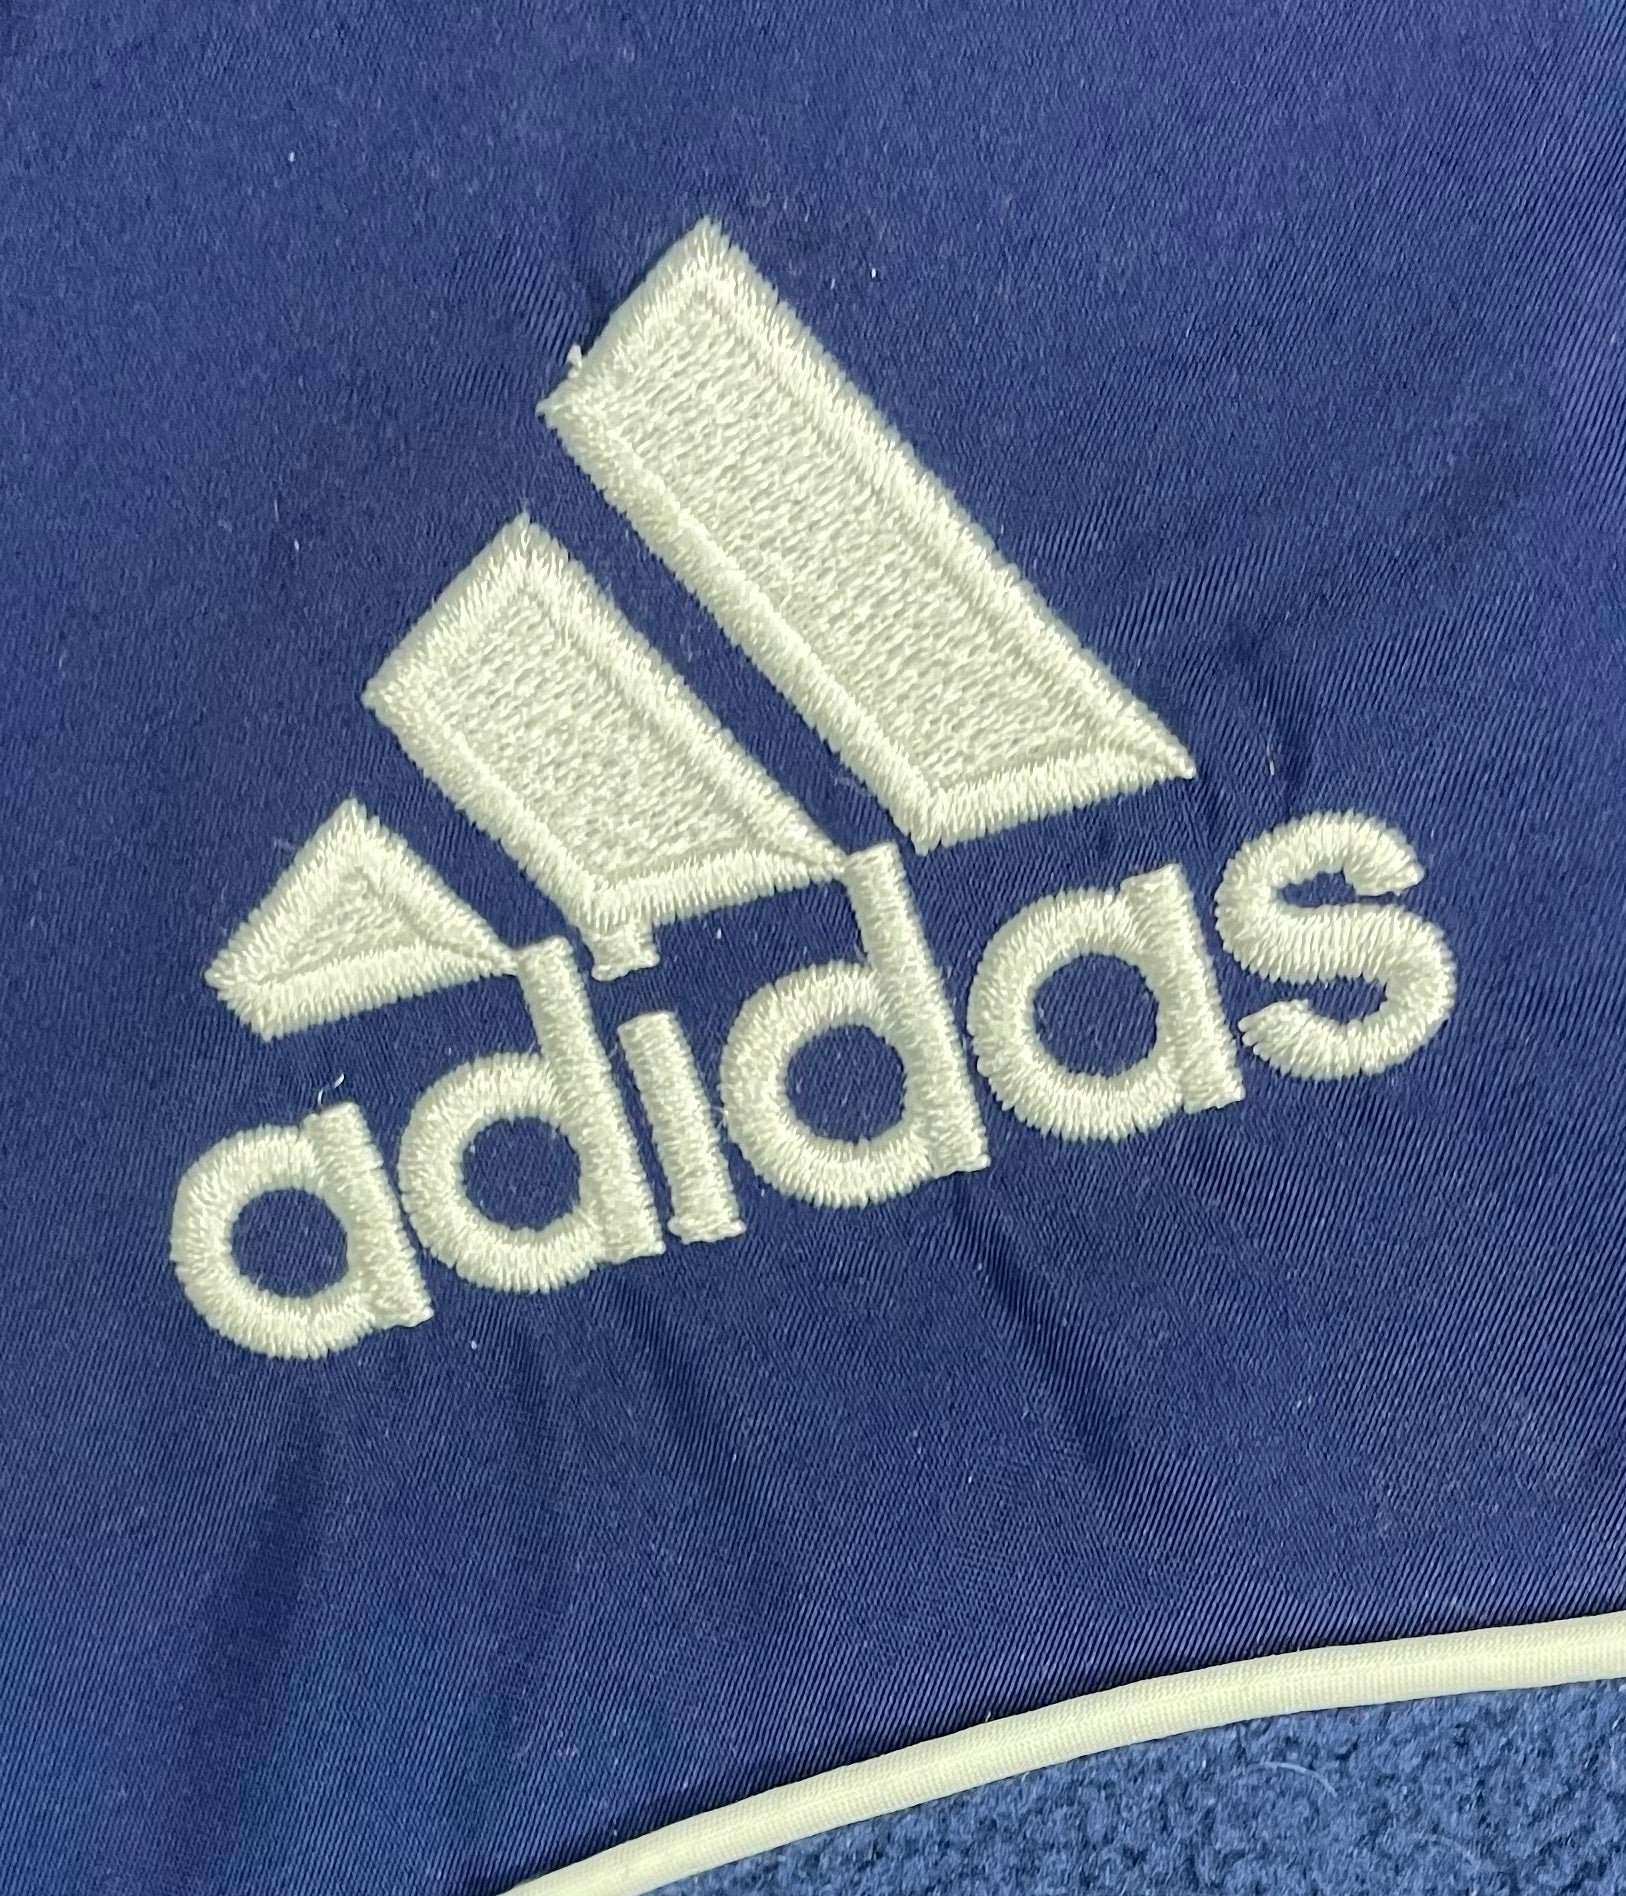 Adidas Vintage Q-Zip Fleece Sweater Blau Größe M